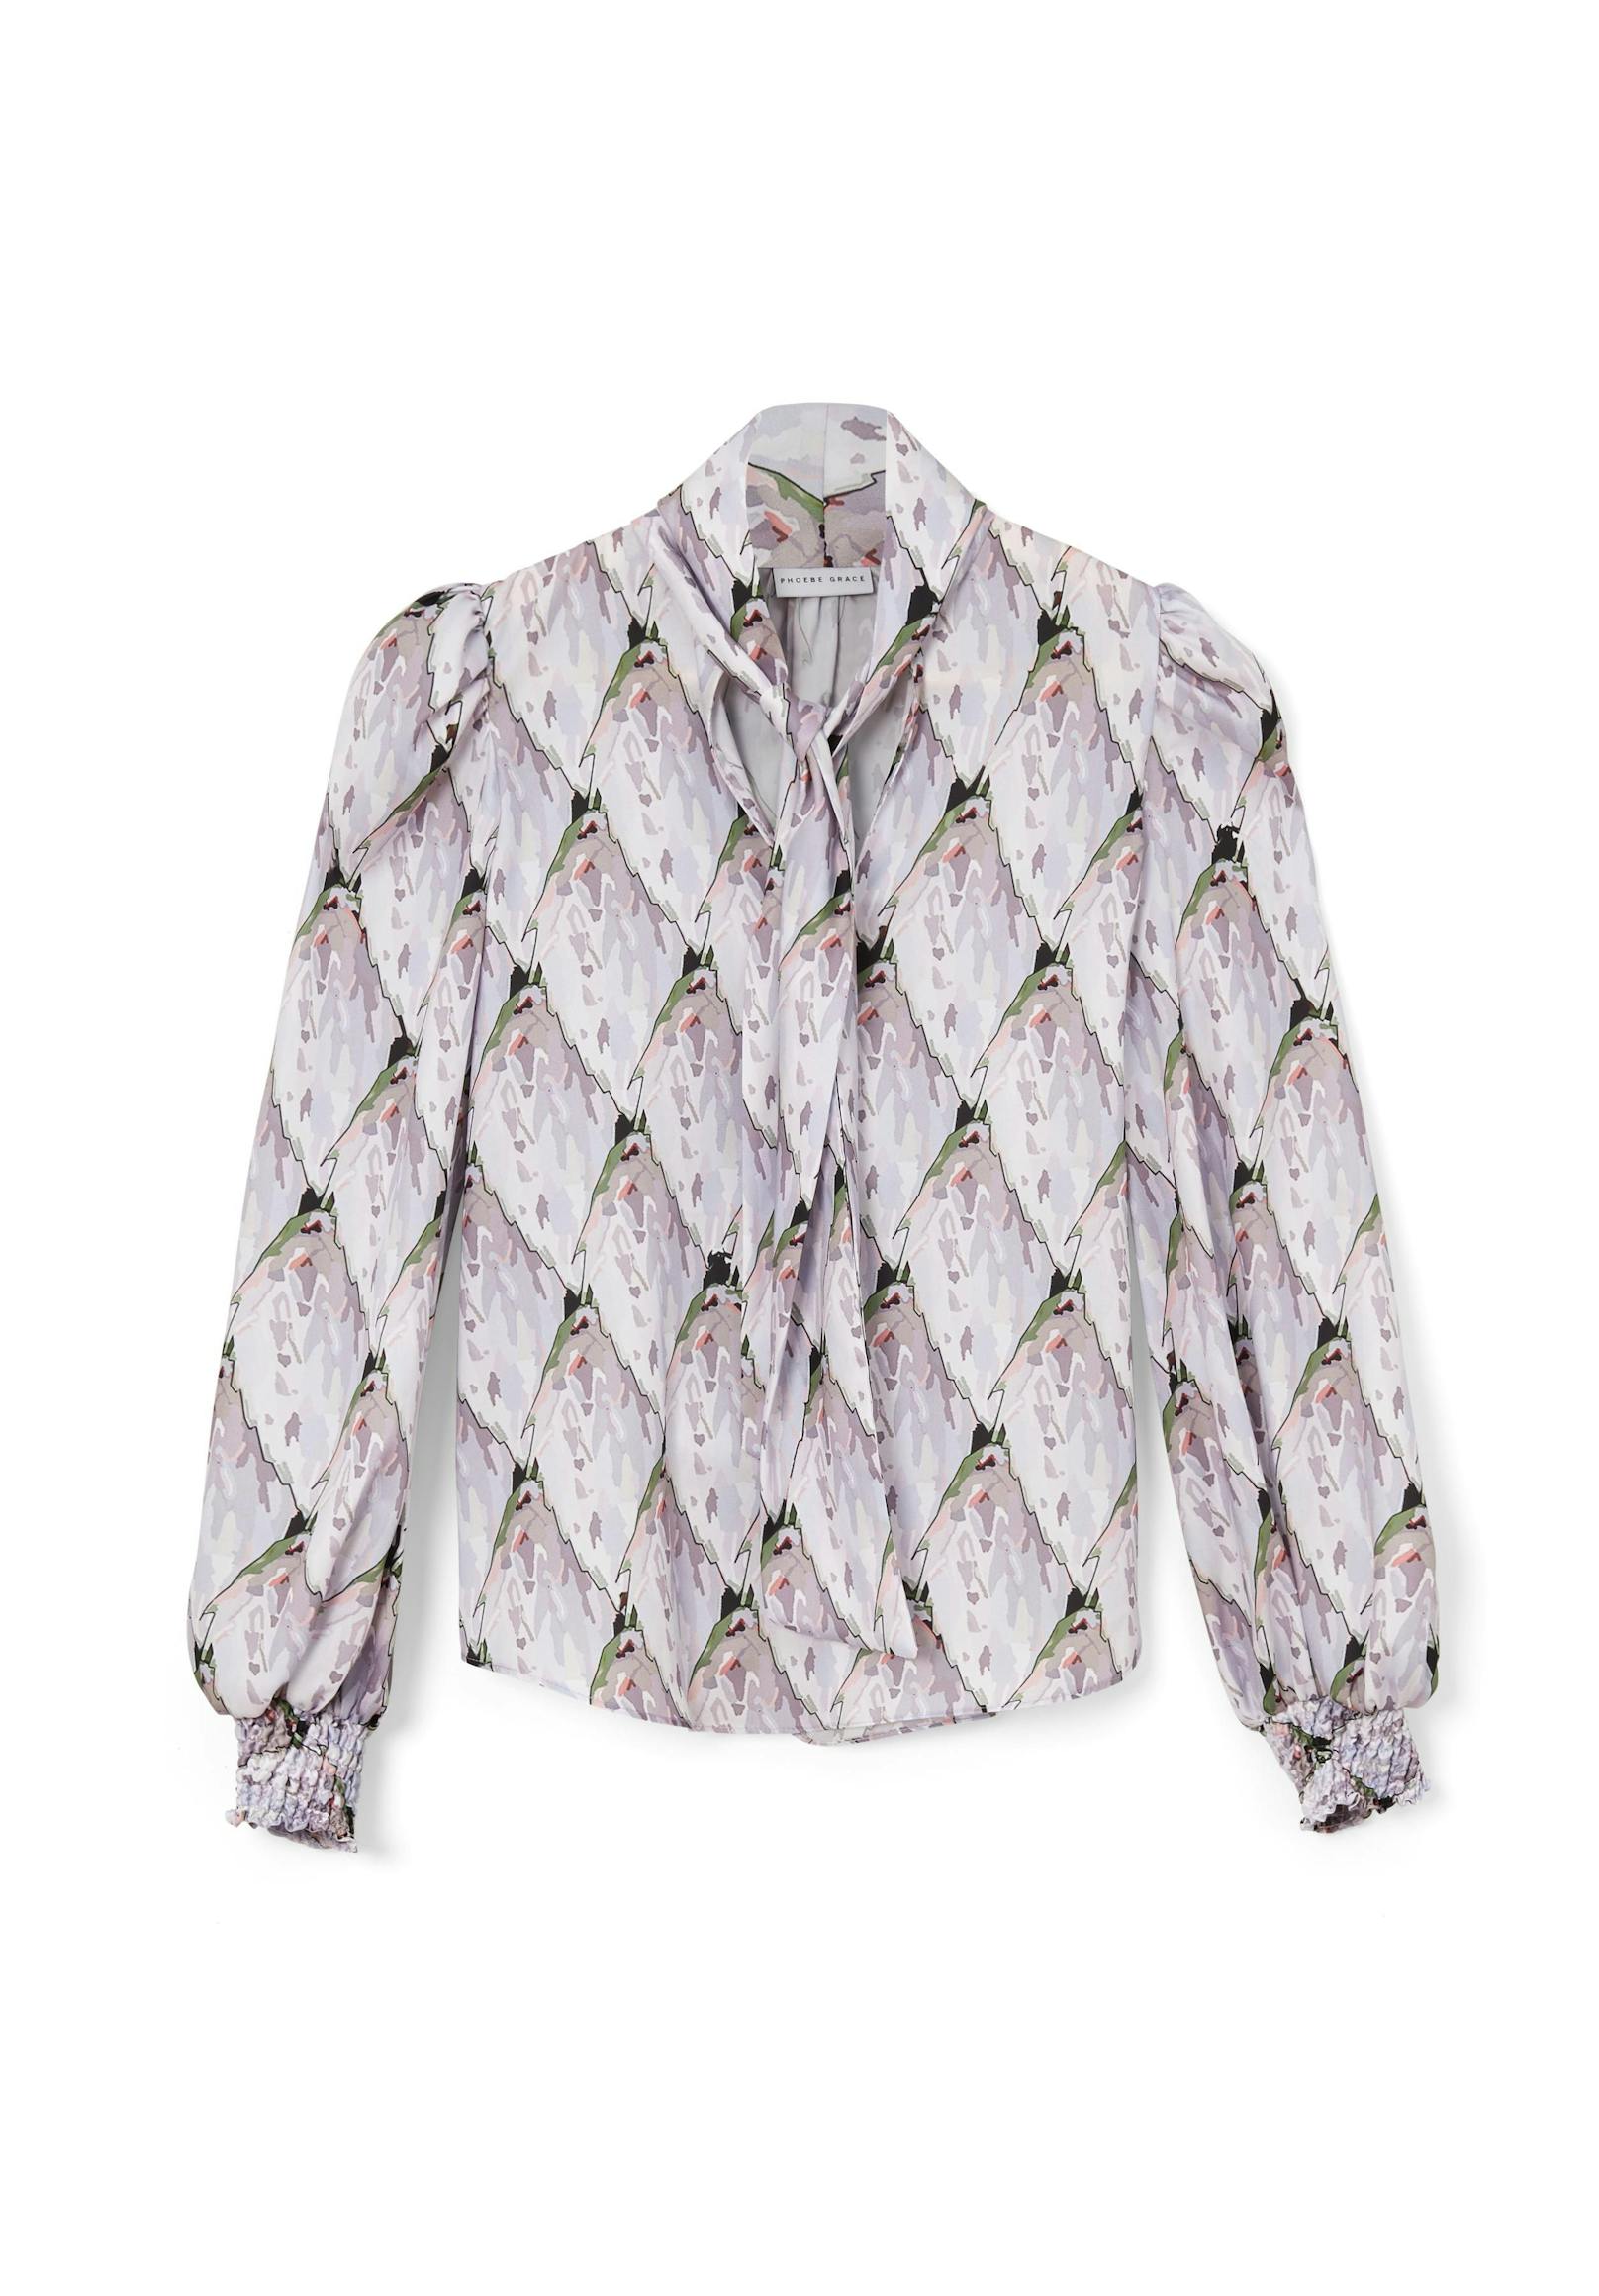 Wunderschöne Bluse von Phoebe Grace im Retro-Design.